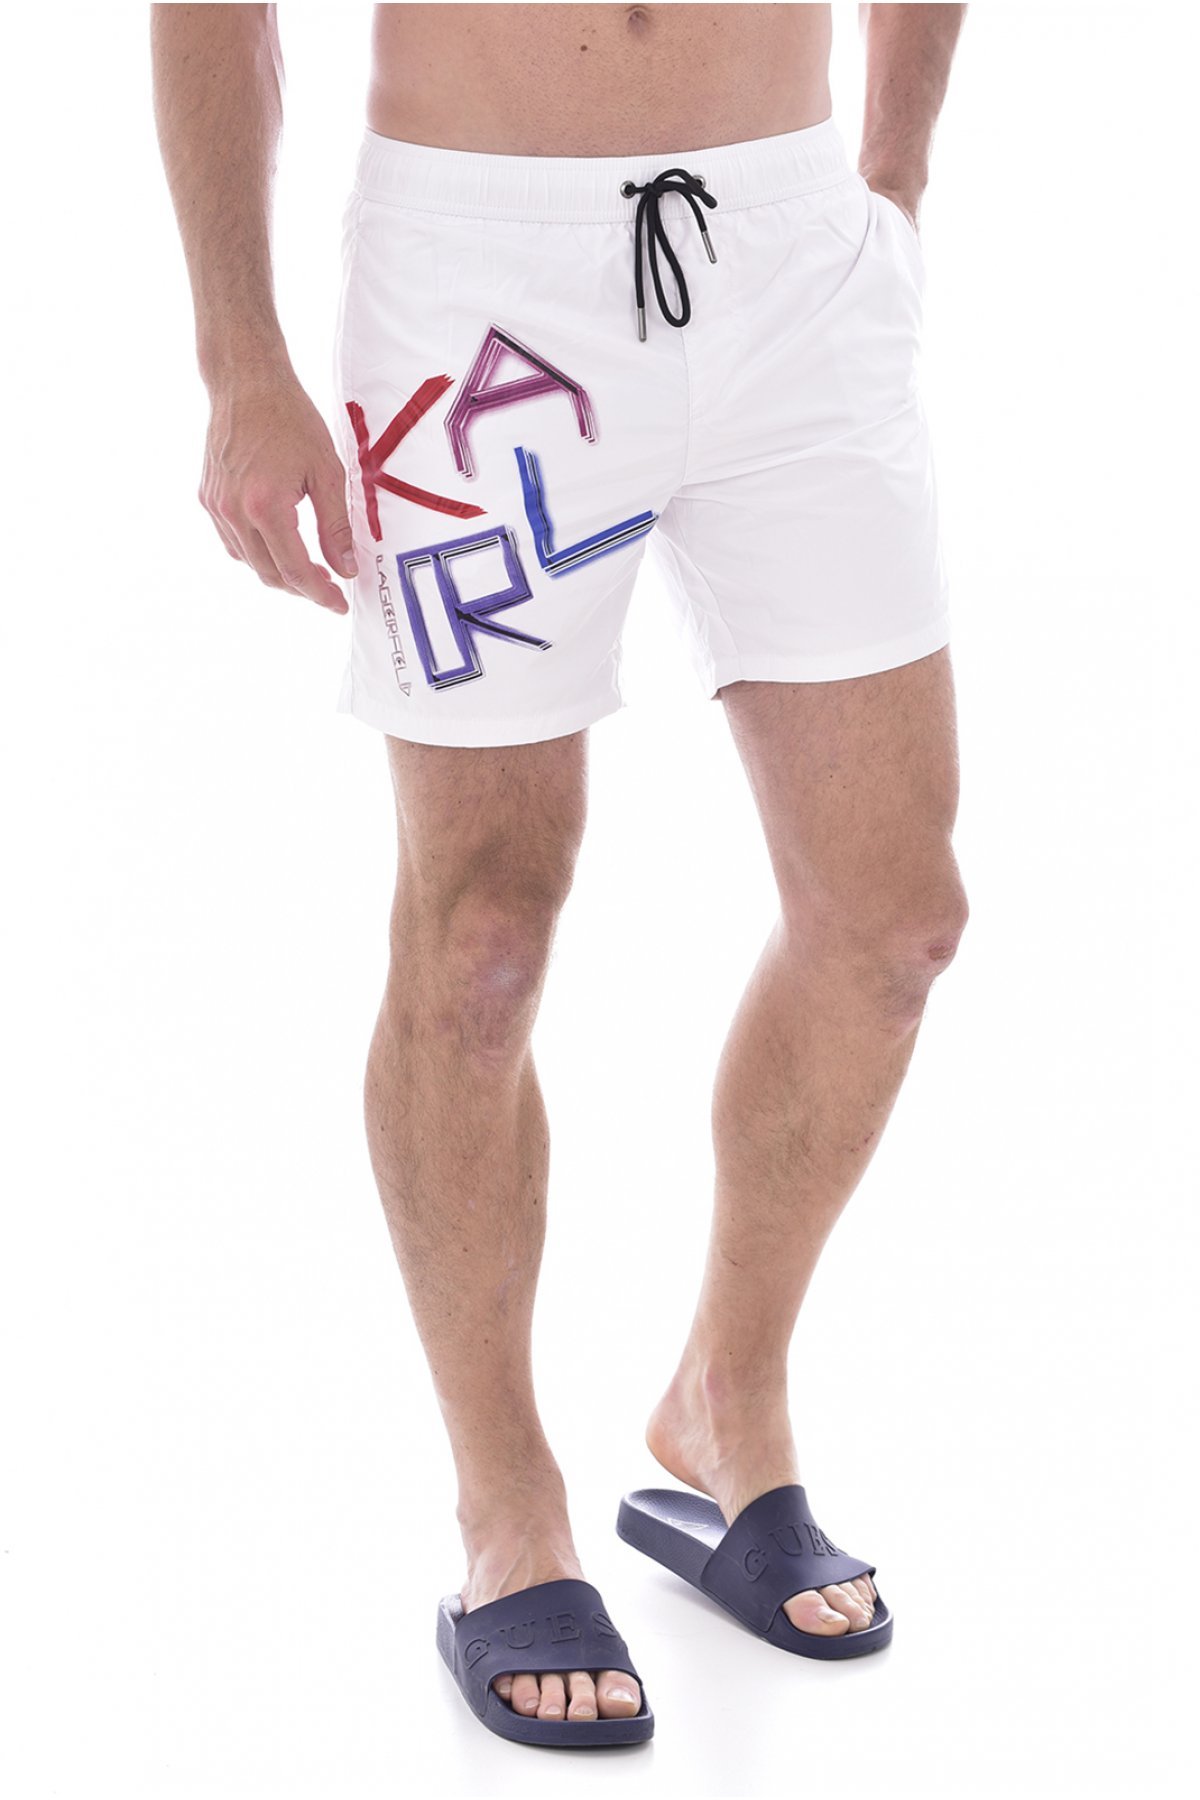 Karl Lagerfeld KL21MBM04 šortky bílé